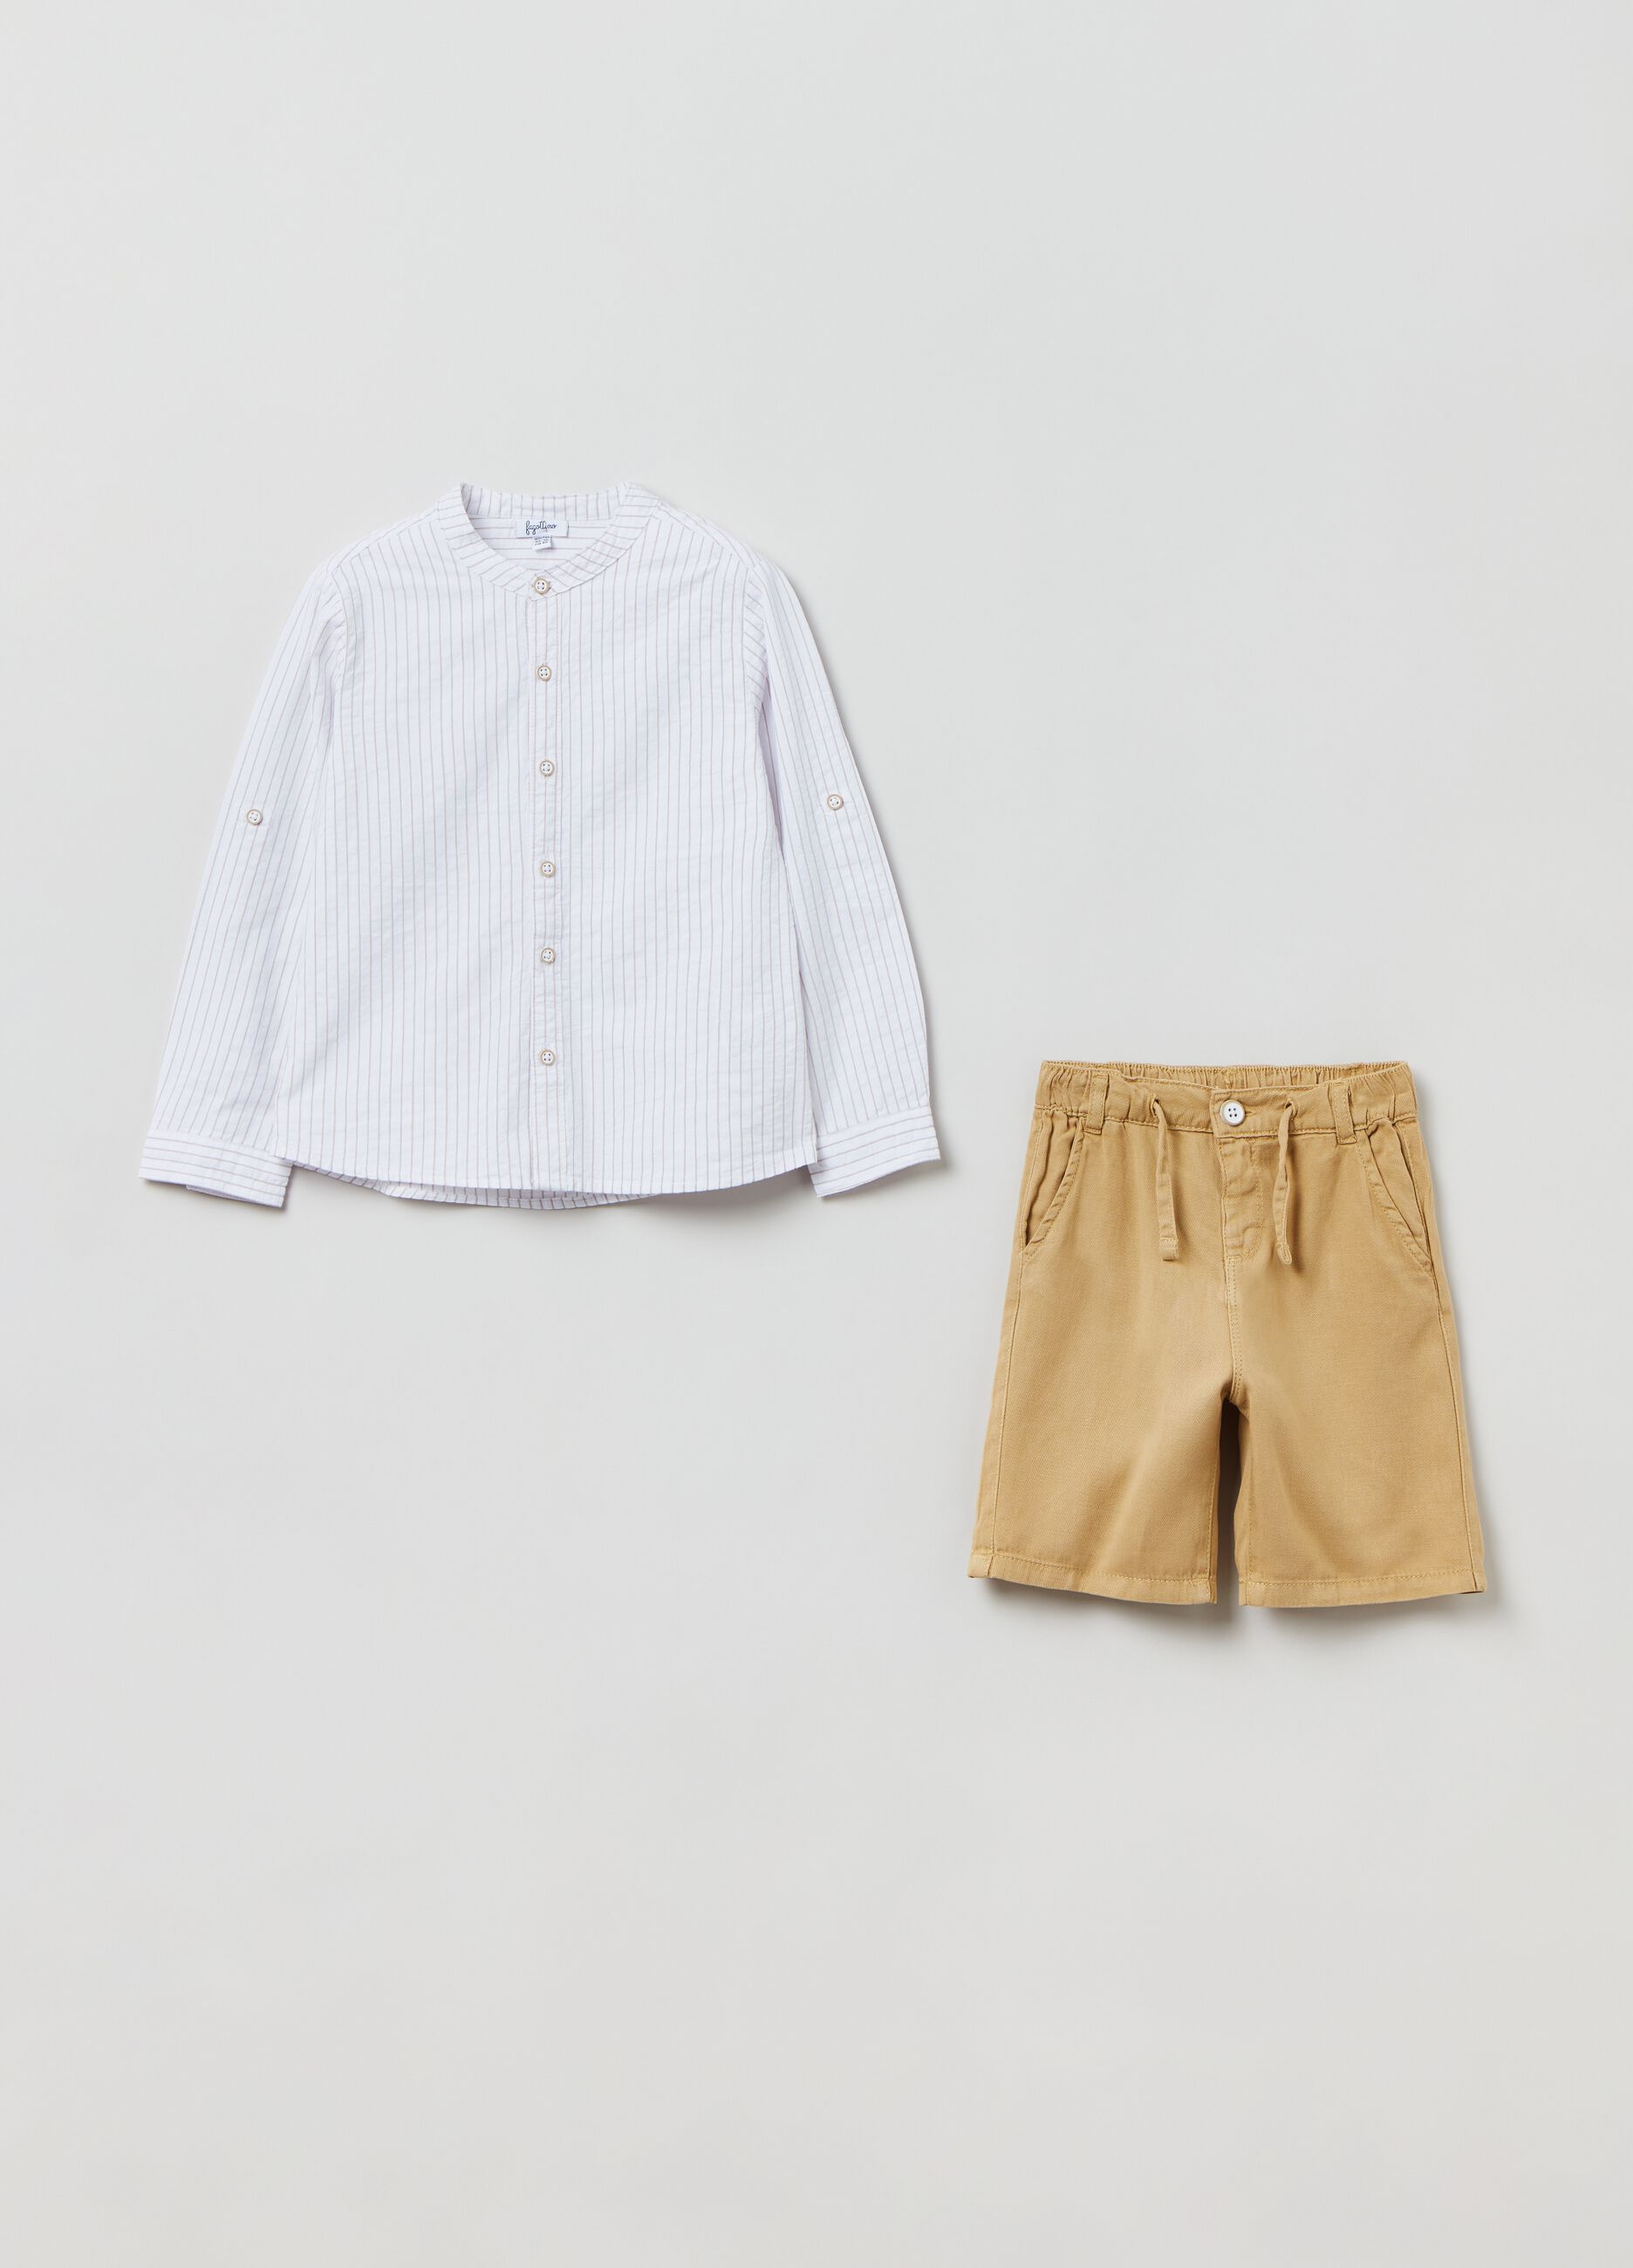 Striped shirt and Bermuda shorts with drawstring set